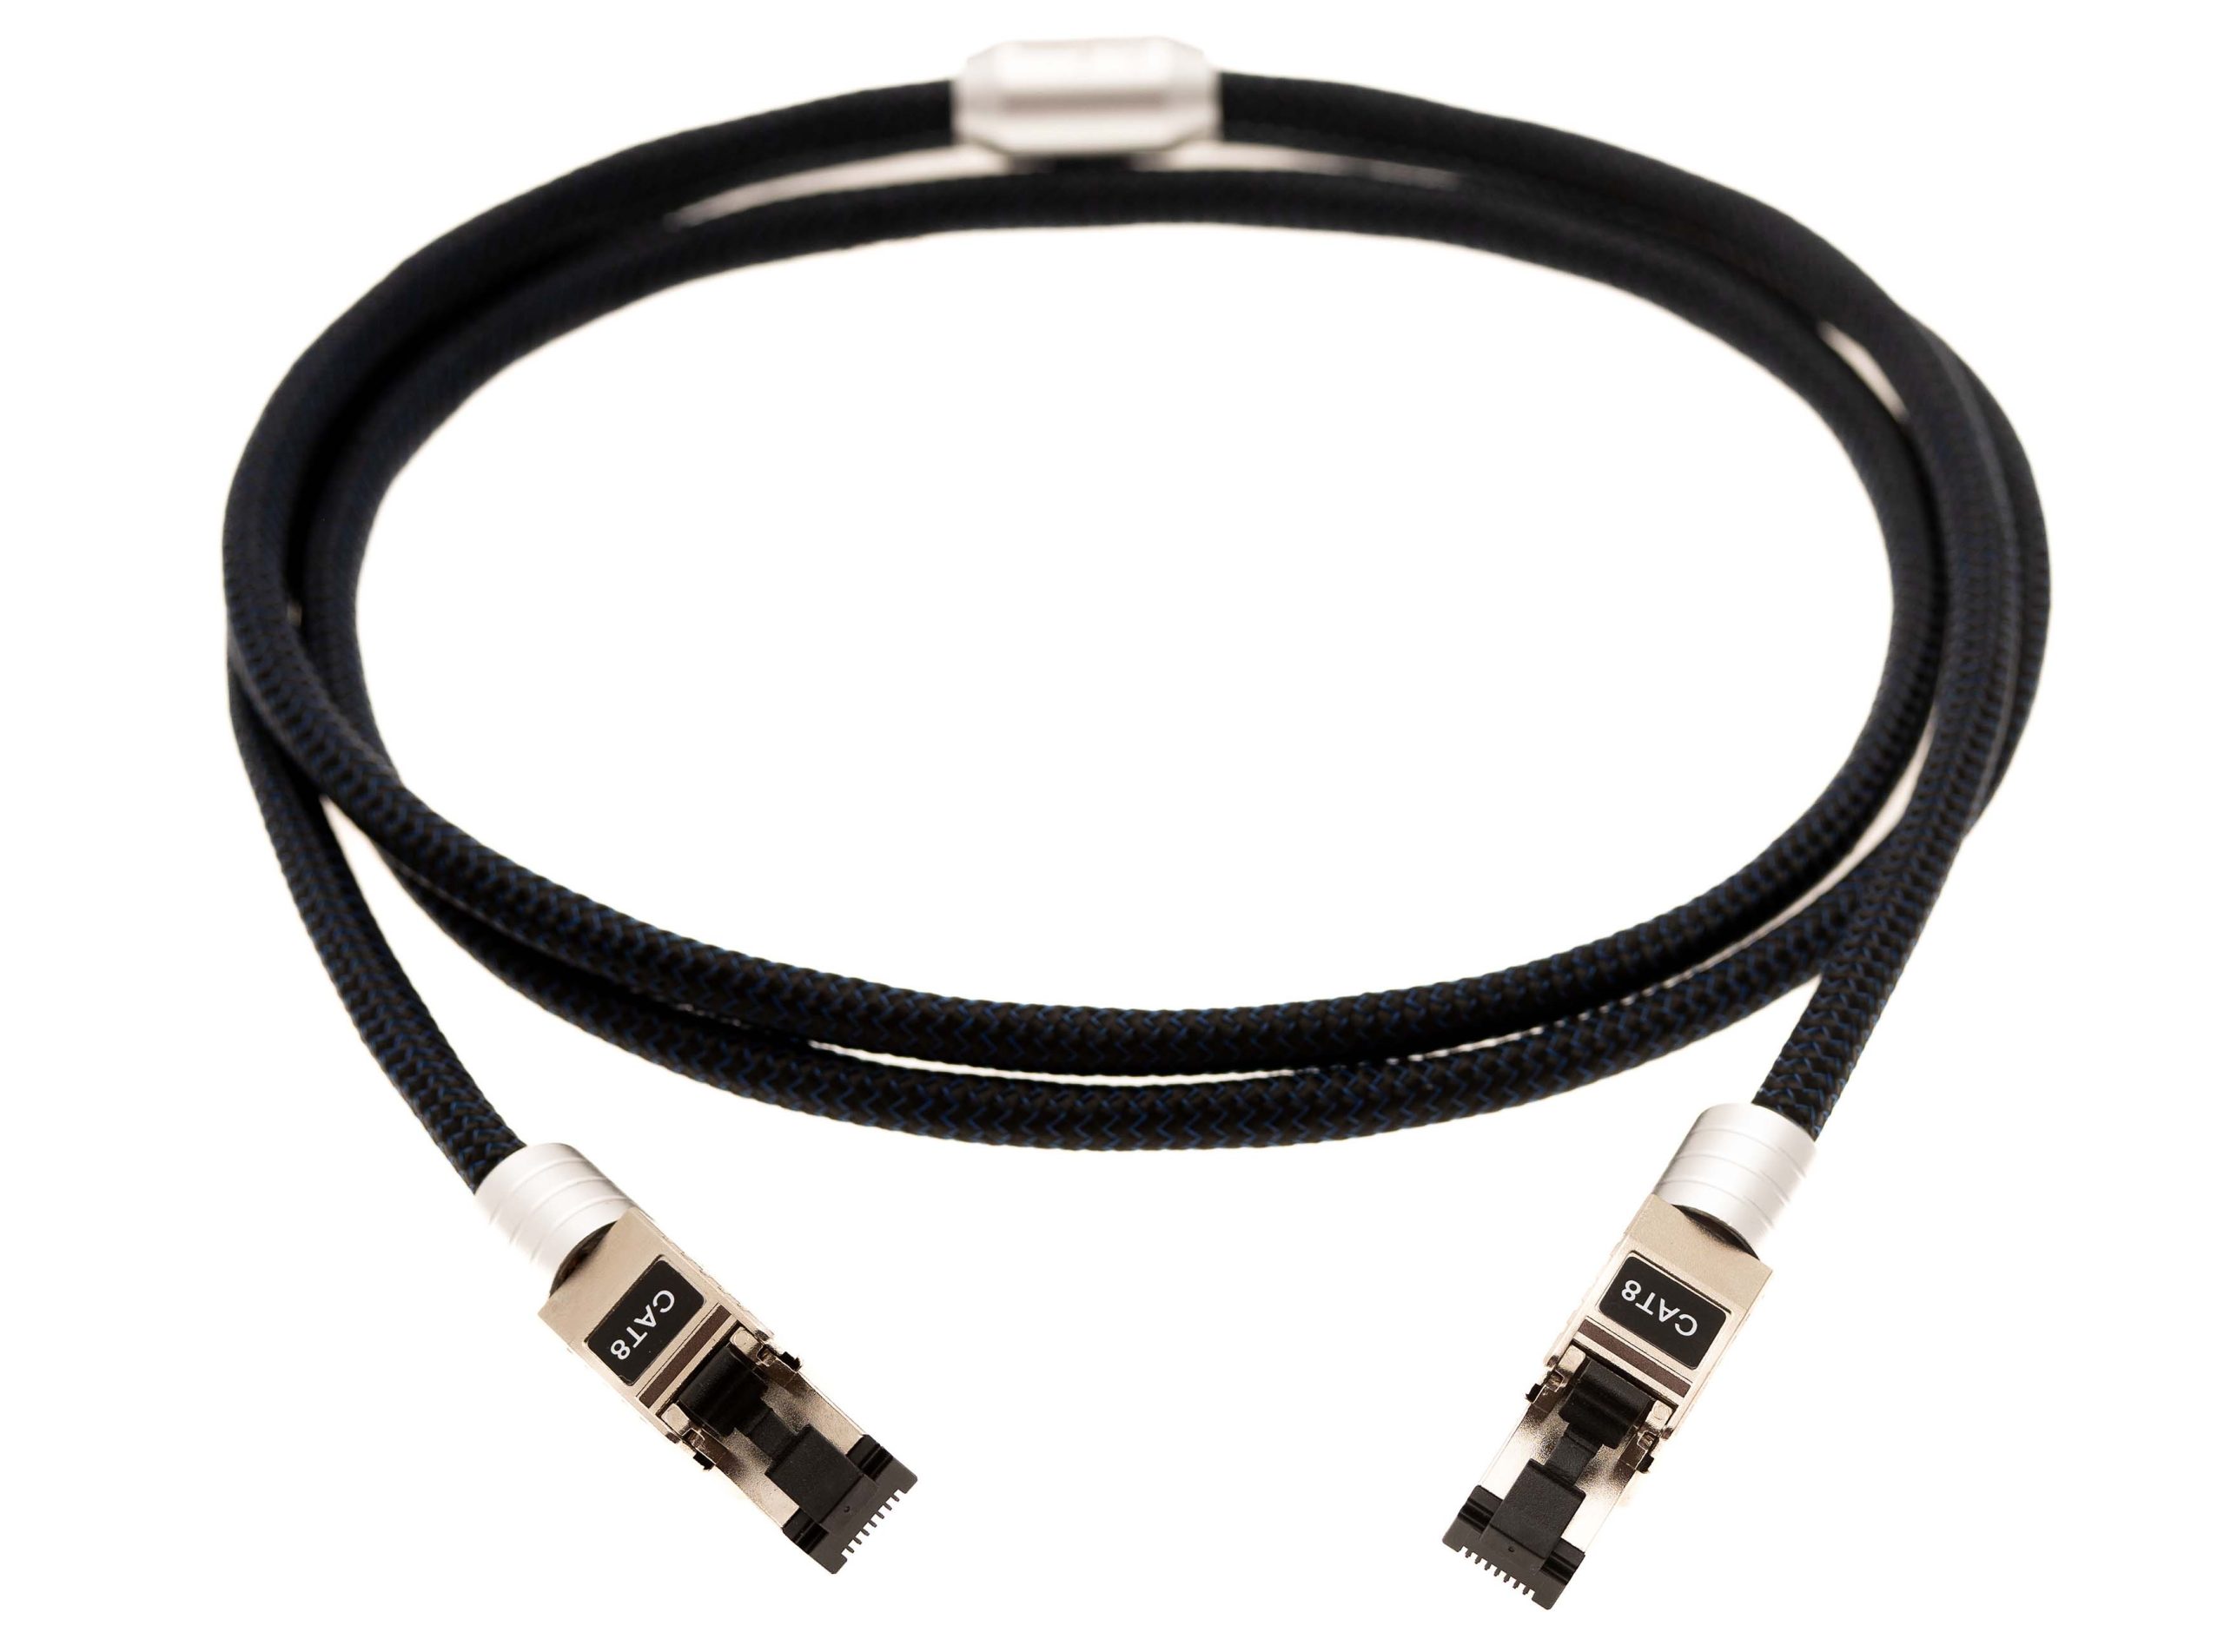 S_Legato RJ45 Cable